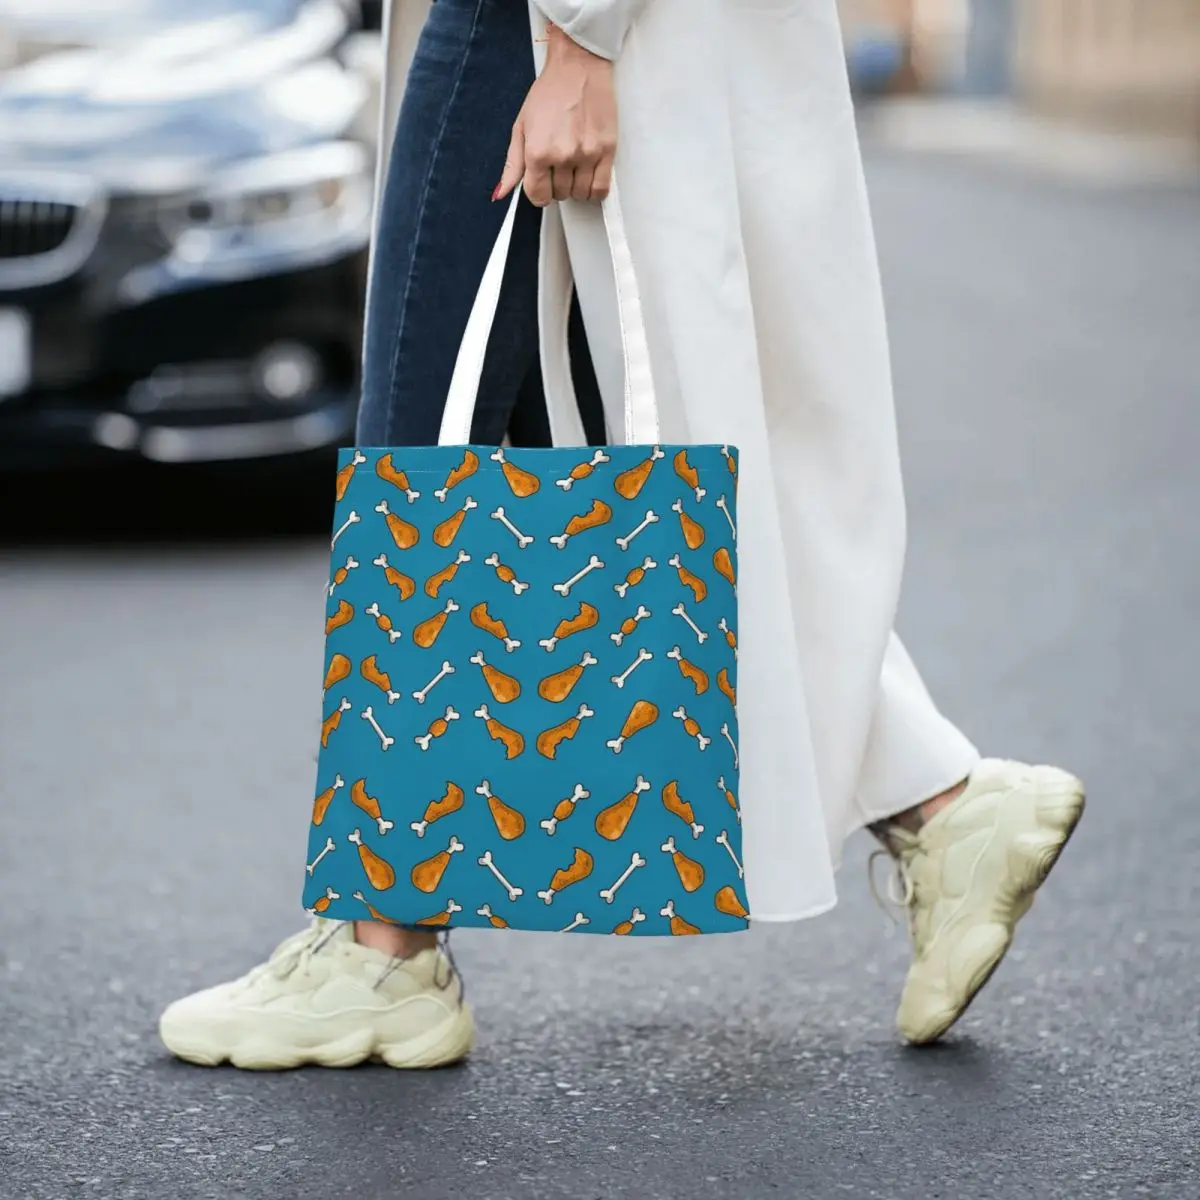 Chicken Leg Totes Canvas Handbag Women Canvas Shopping Bag